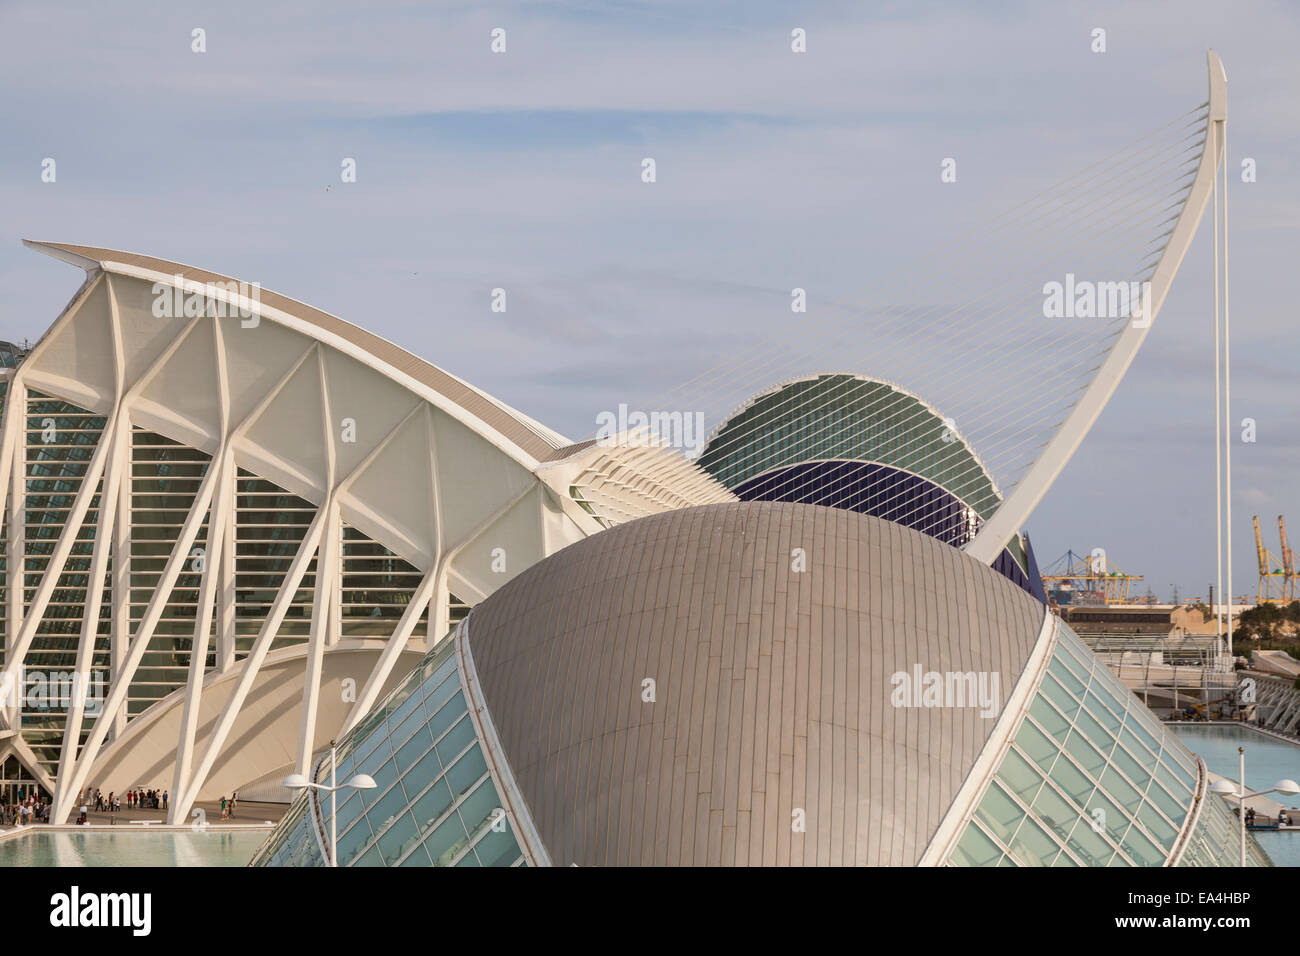 Vue sur l'hemisferic au pont de grau dans la ville des arts et des sciences, Valence, Espagne. Banque D'Images